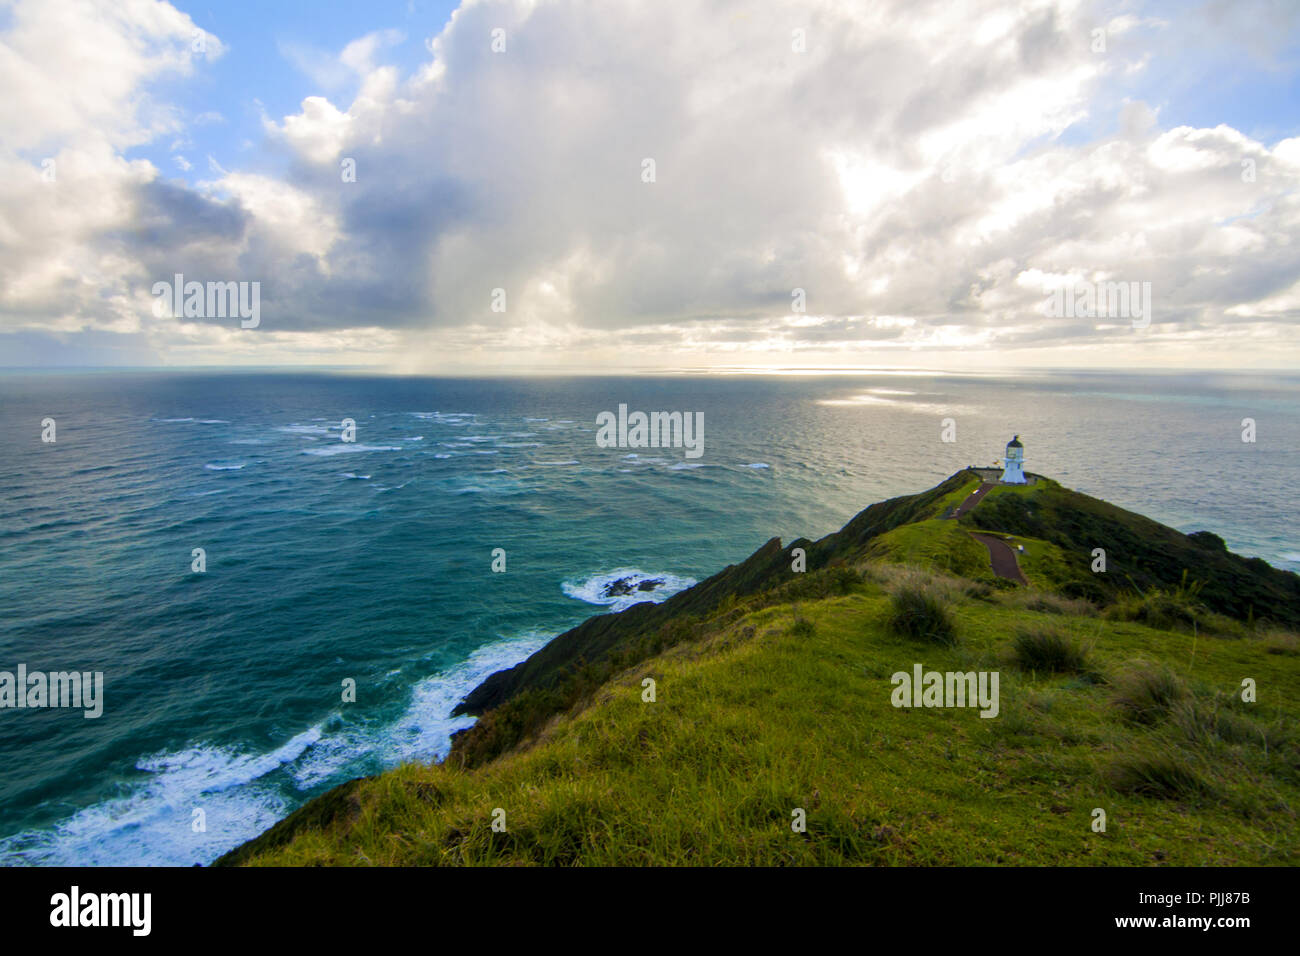 Bellissimo Oceano pacifico paesaggio con faro sulla cima della scogliera di picco, Cape Reinga Light house, Northland, Nuova Zelanda, seasascape landmark Foto Stock